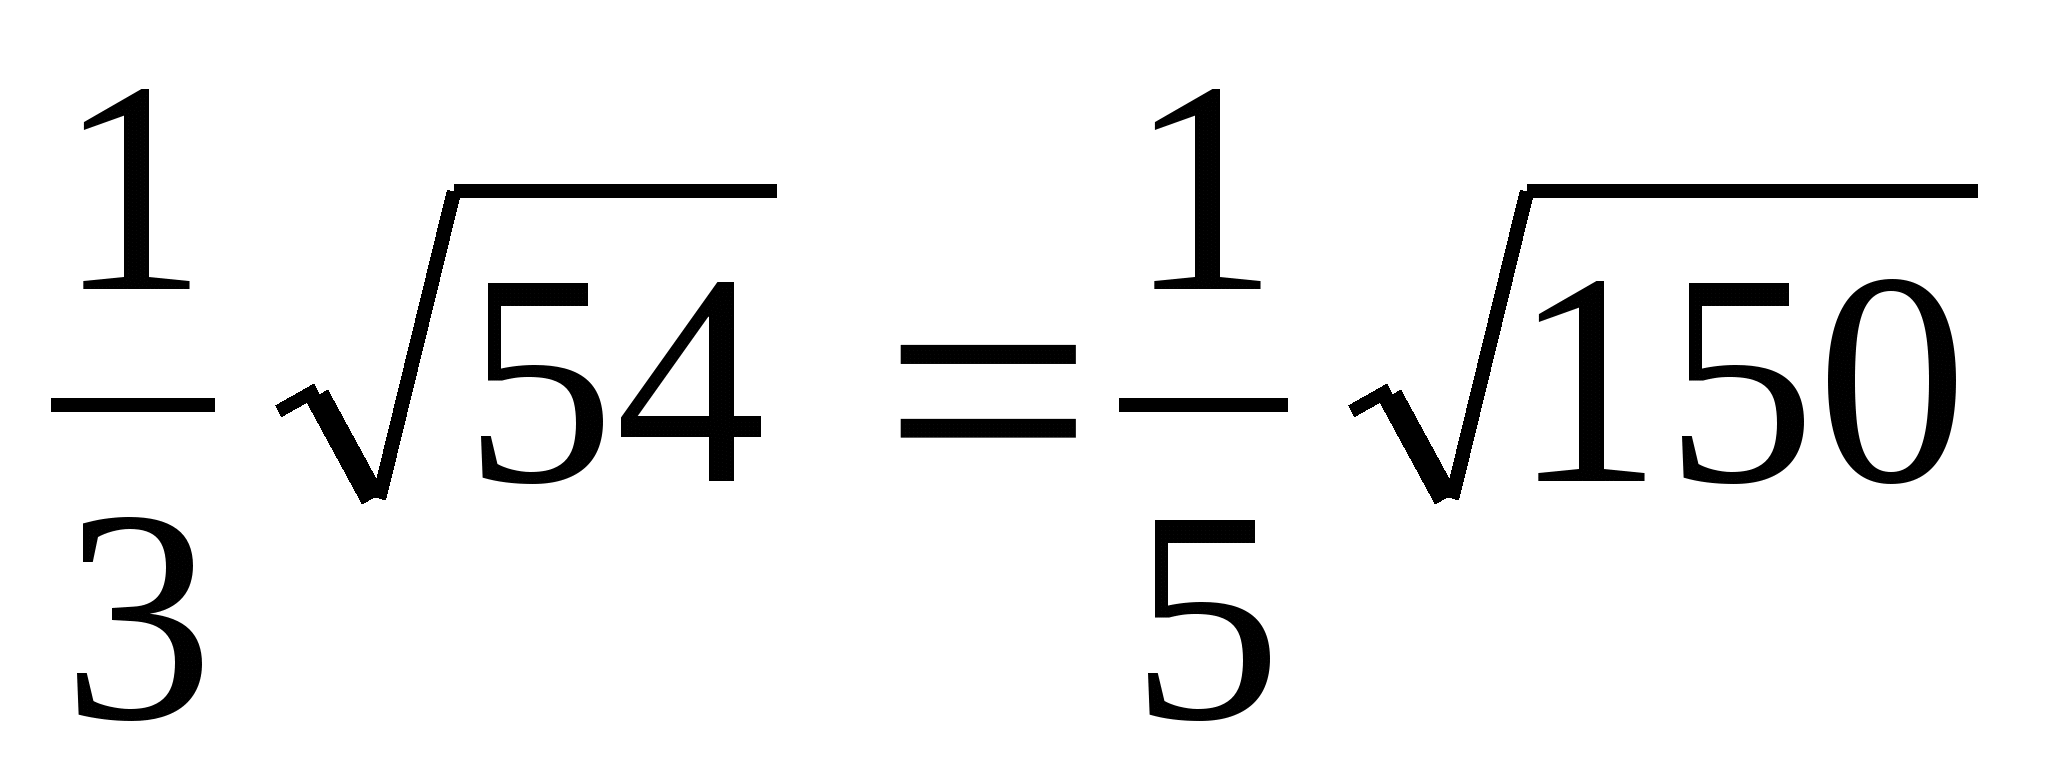 Урок математики в 8 класса по теме Внесение множителя под знак корня. вынесение множителя из под знака корня